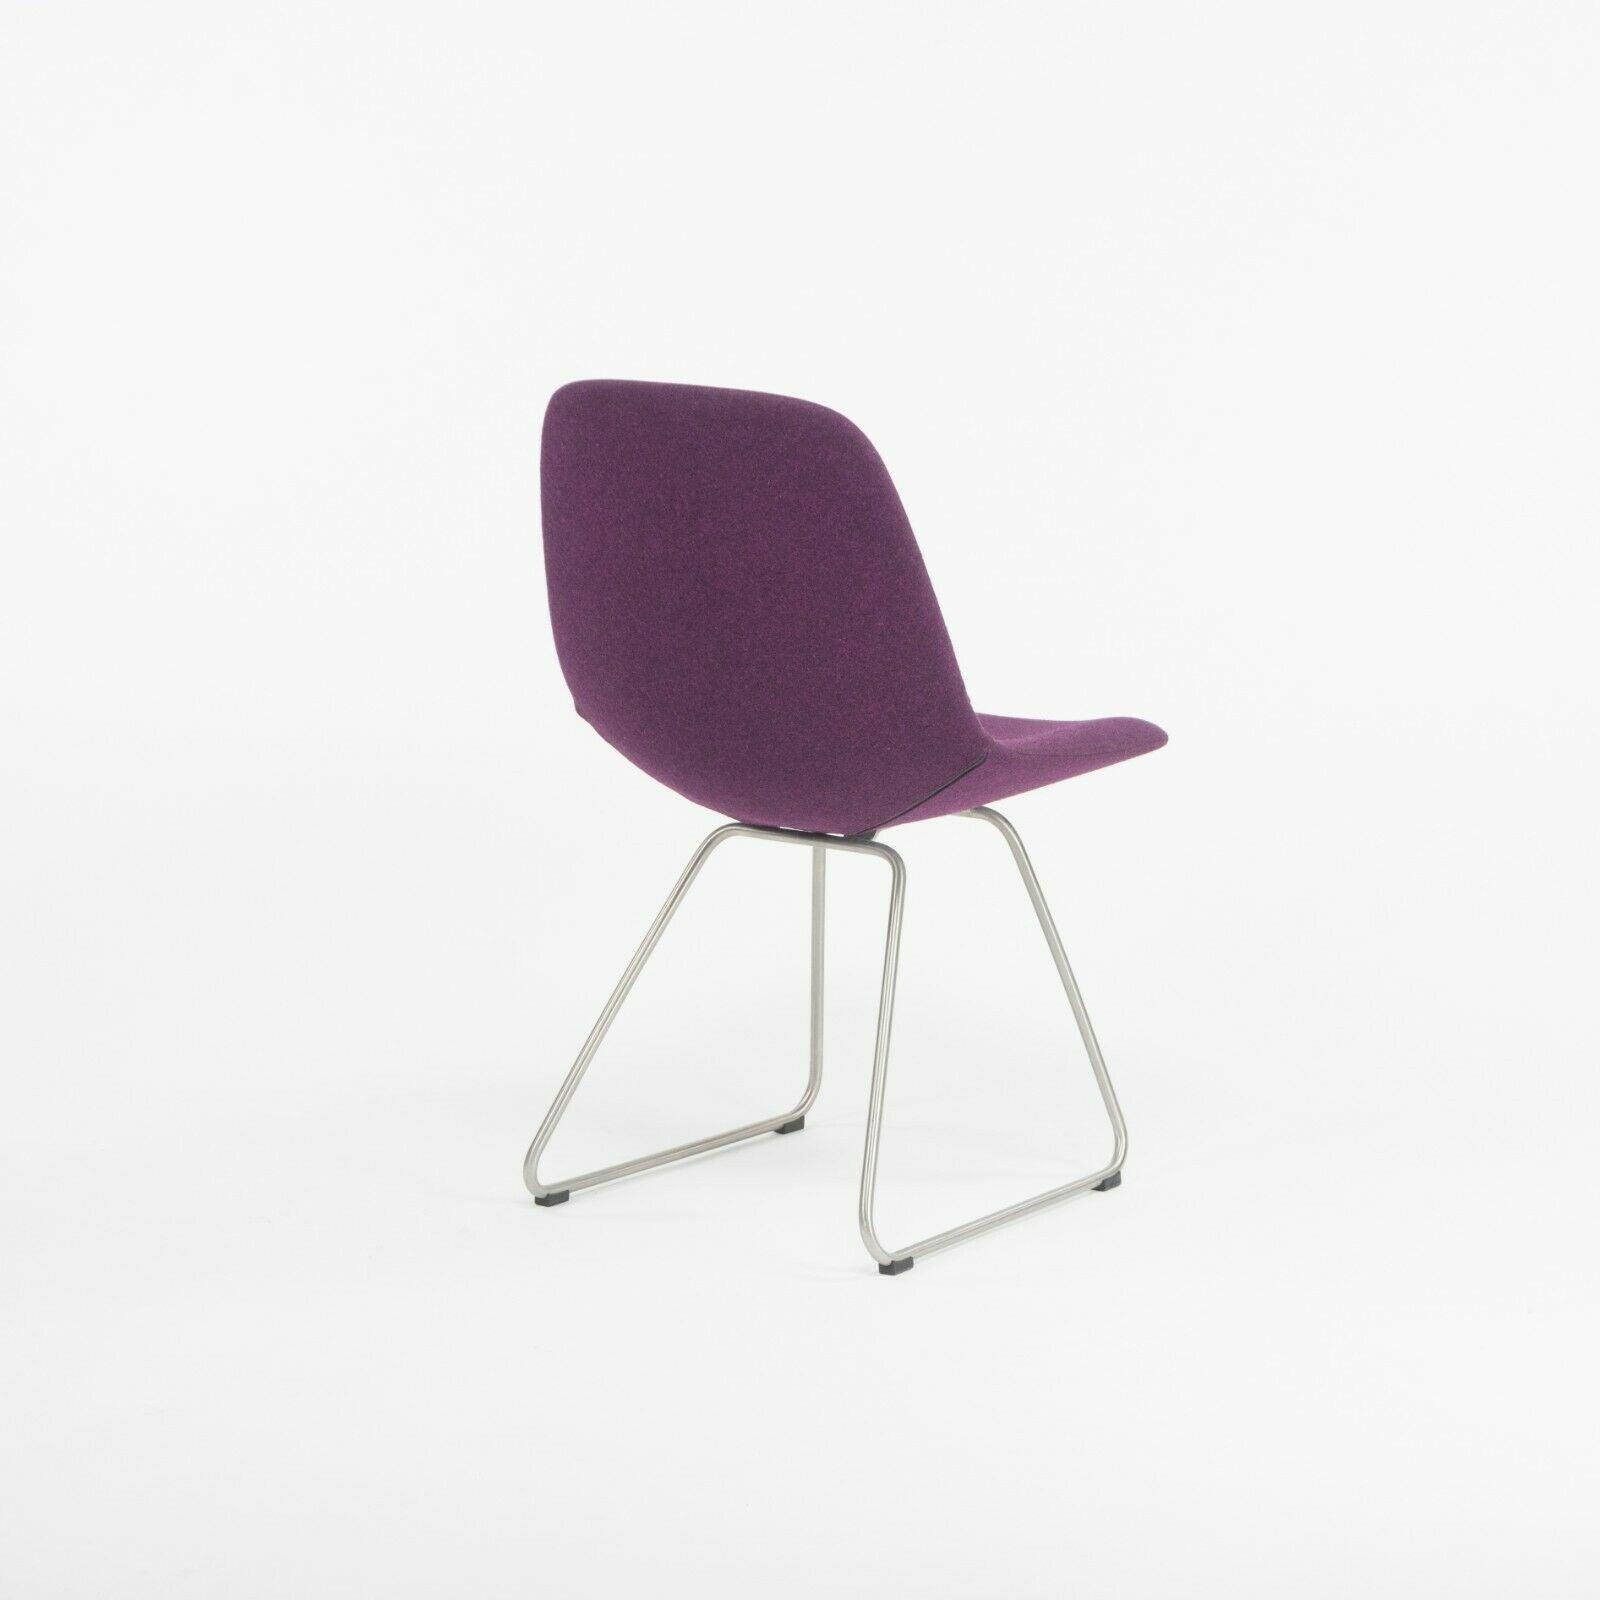 Set of 6 Erik Jorgensen EJ 2 Eyes Chair by Foersom + Hiort-Lorenzen in Purple In Good Condition For Sale In Philadelphia, PA